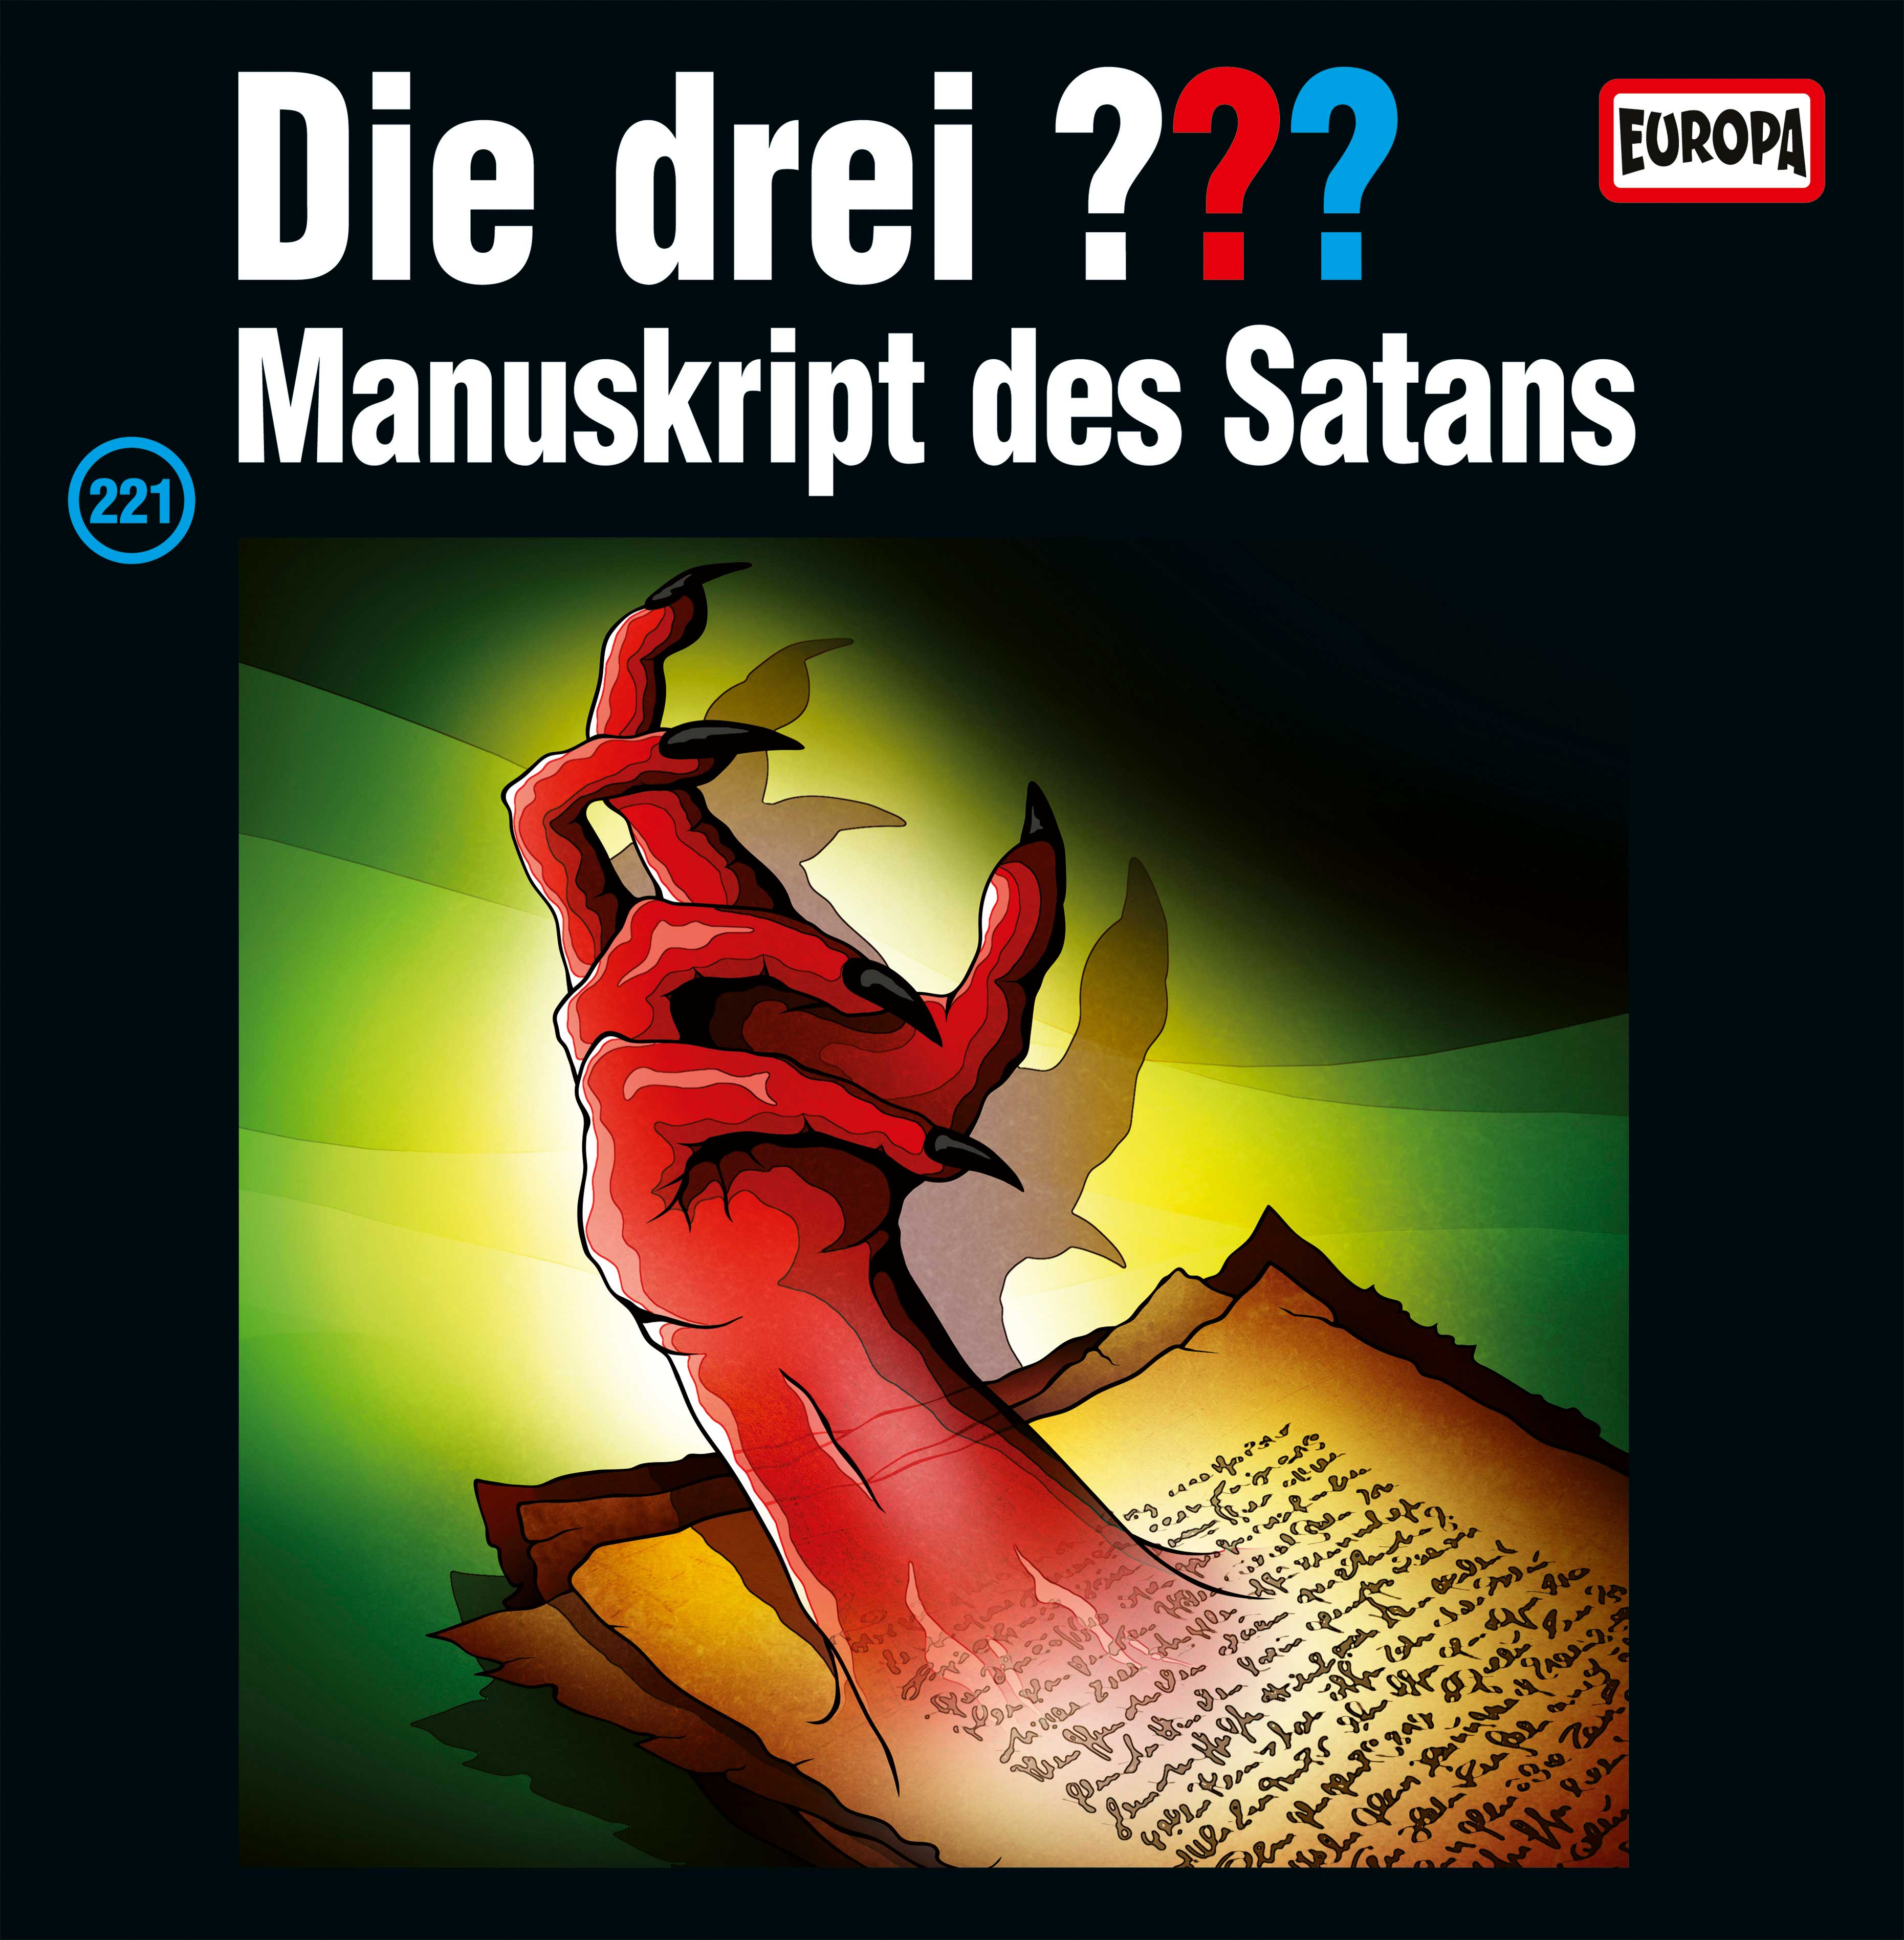 Die drei ??? - Manuskript des Satans (Vinyl)